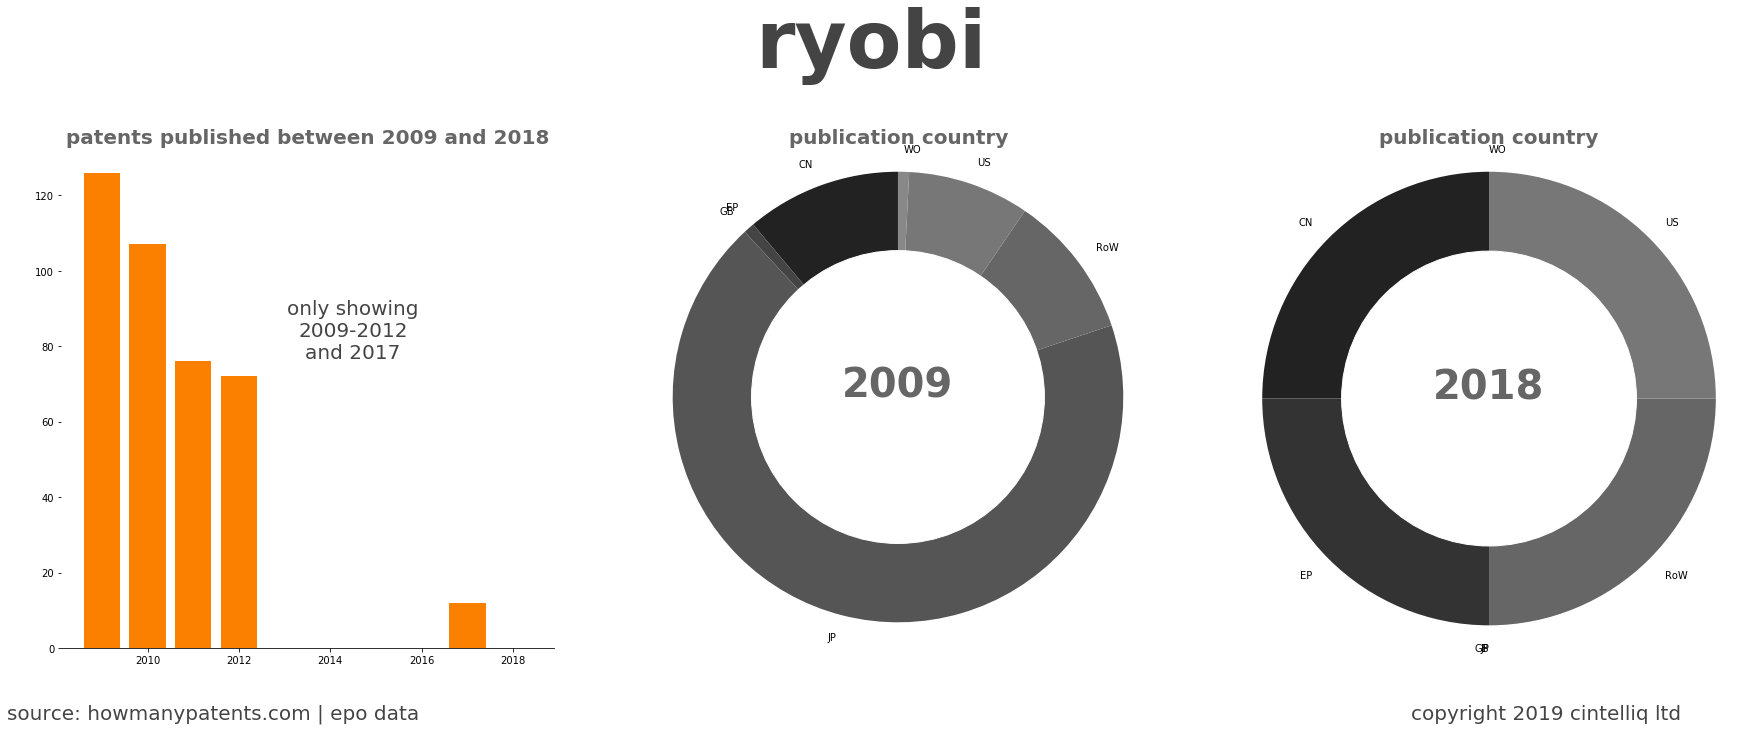 summary of patents for Ryobi